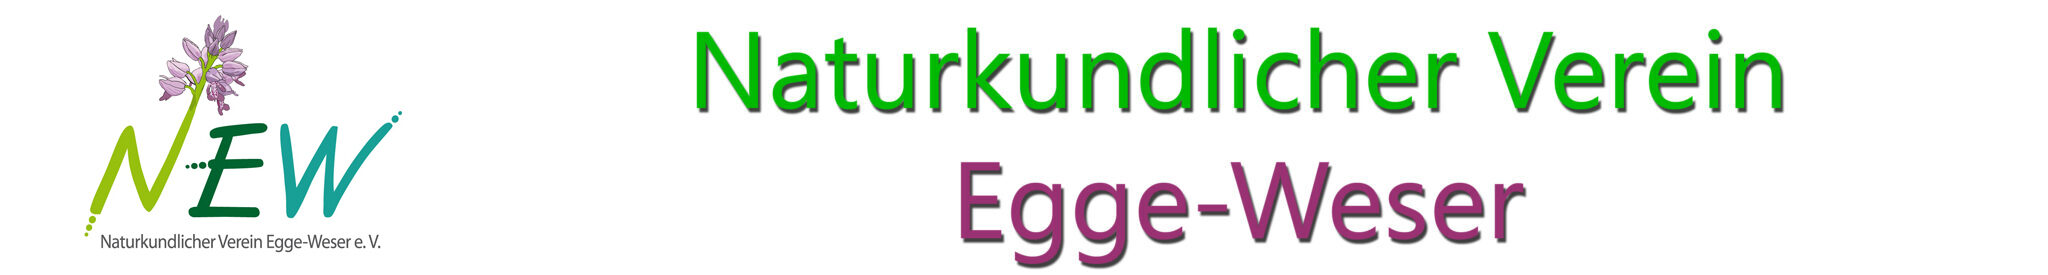 Naturkundlicher Verein Egge-Weser